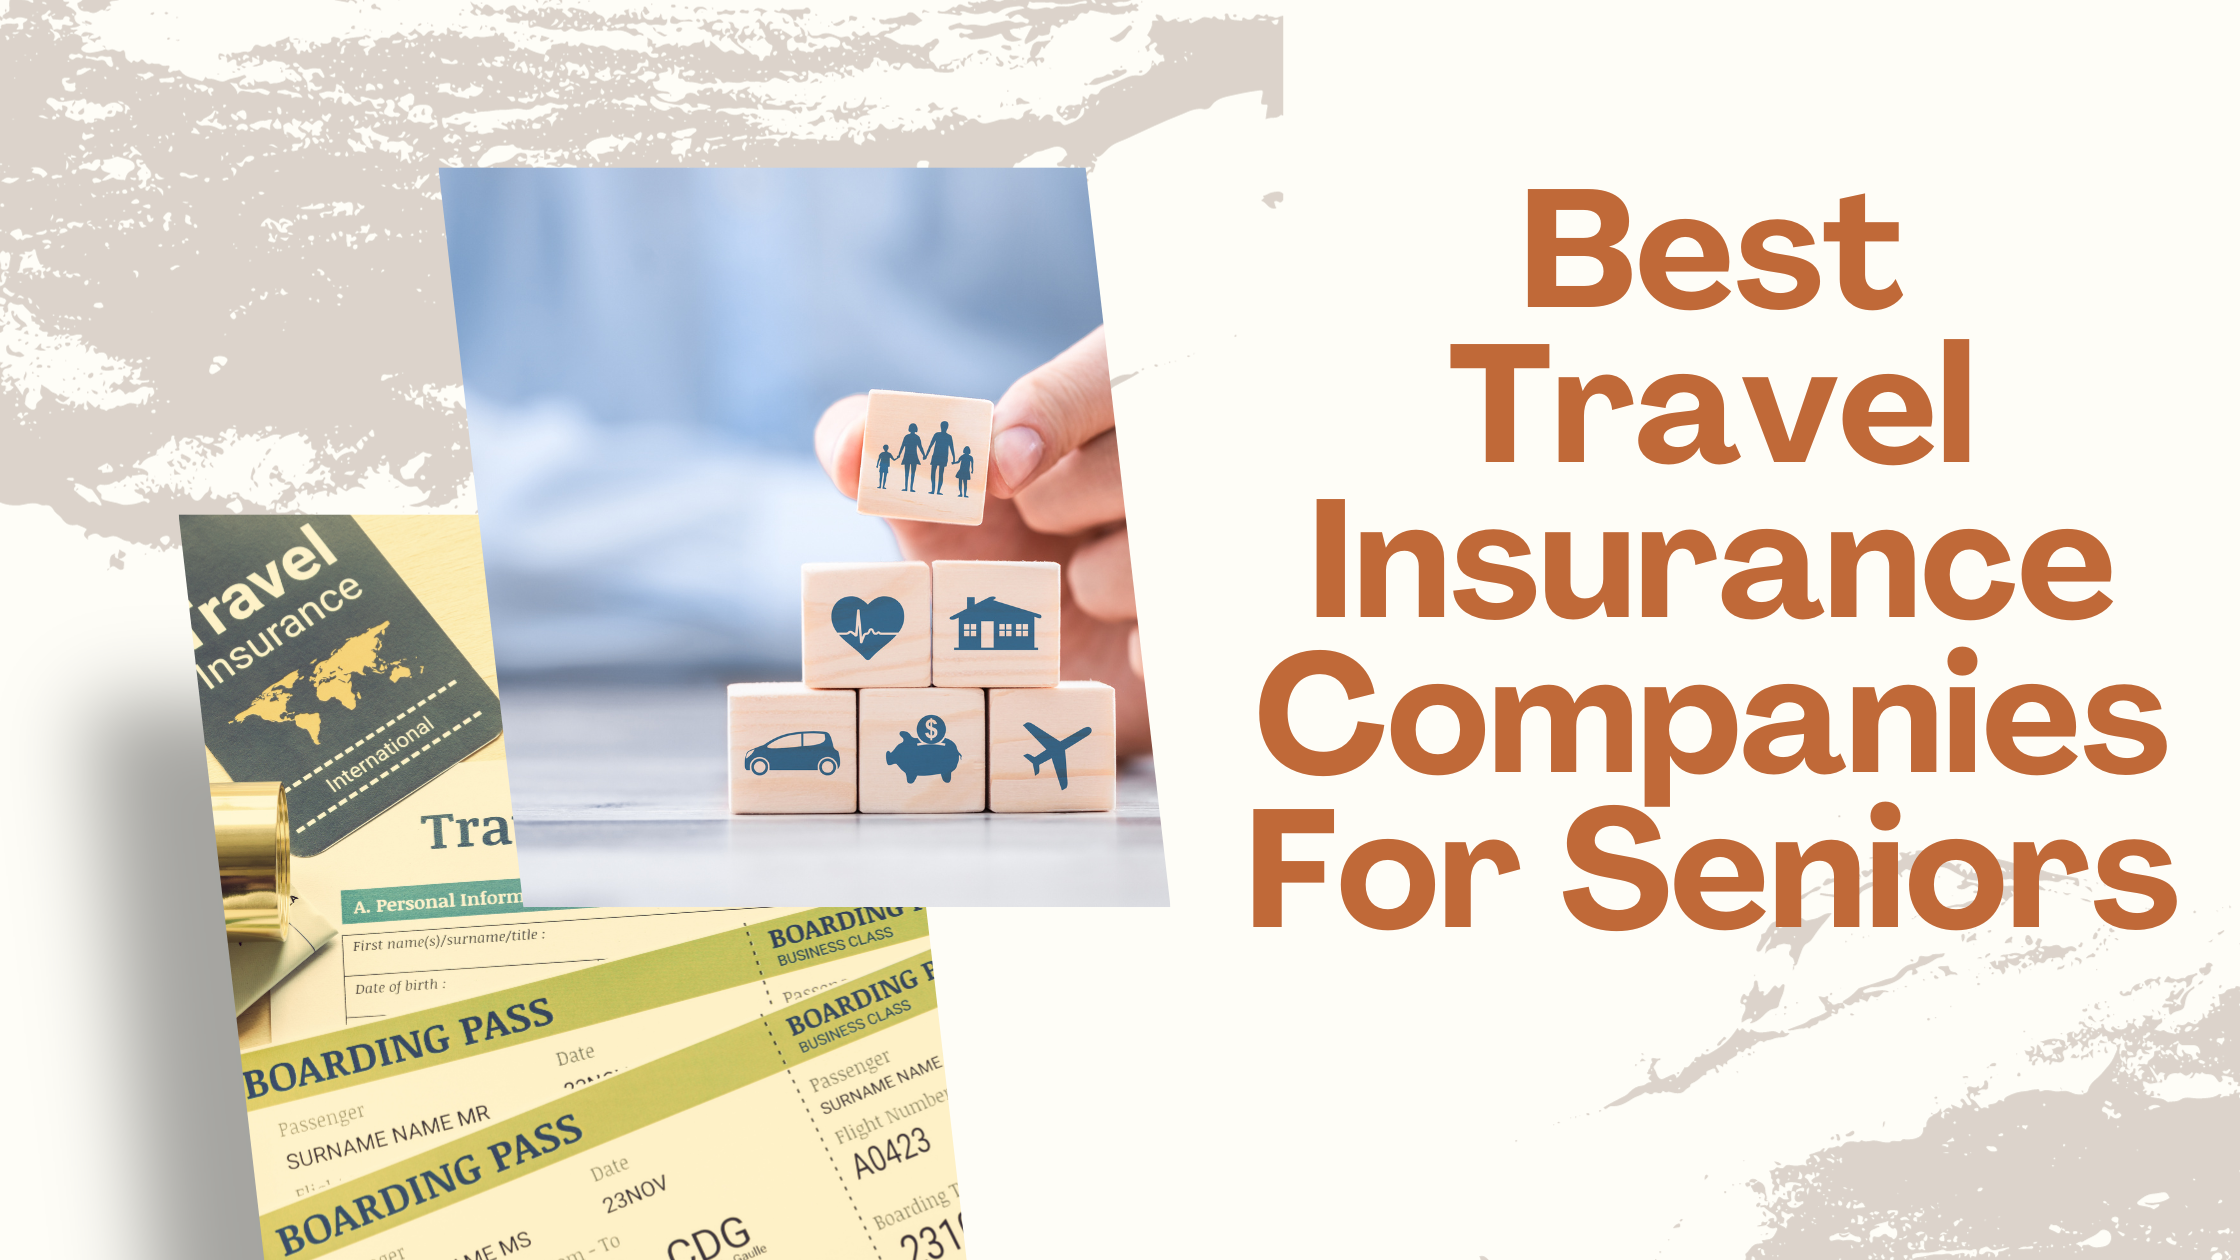 12 Best Travel Insurance Companies For Seniors